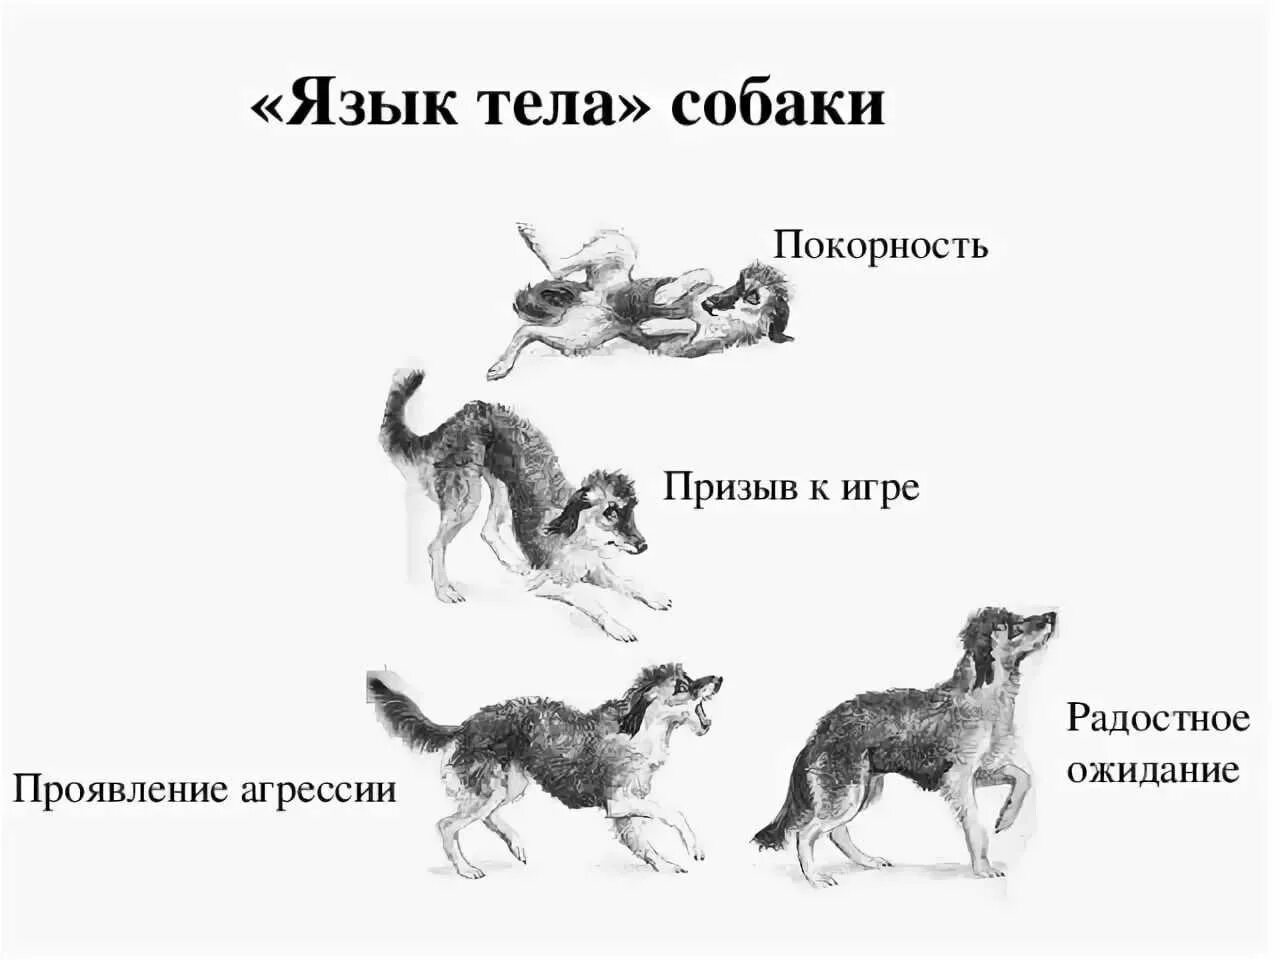 Что такое повадки животных. Поведение собак. Язык тела собаки в картинках. Араедение собак. Виды поведения собак.